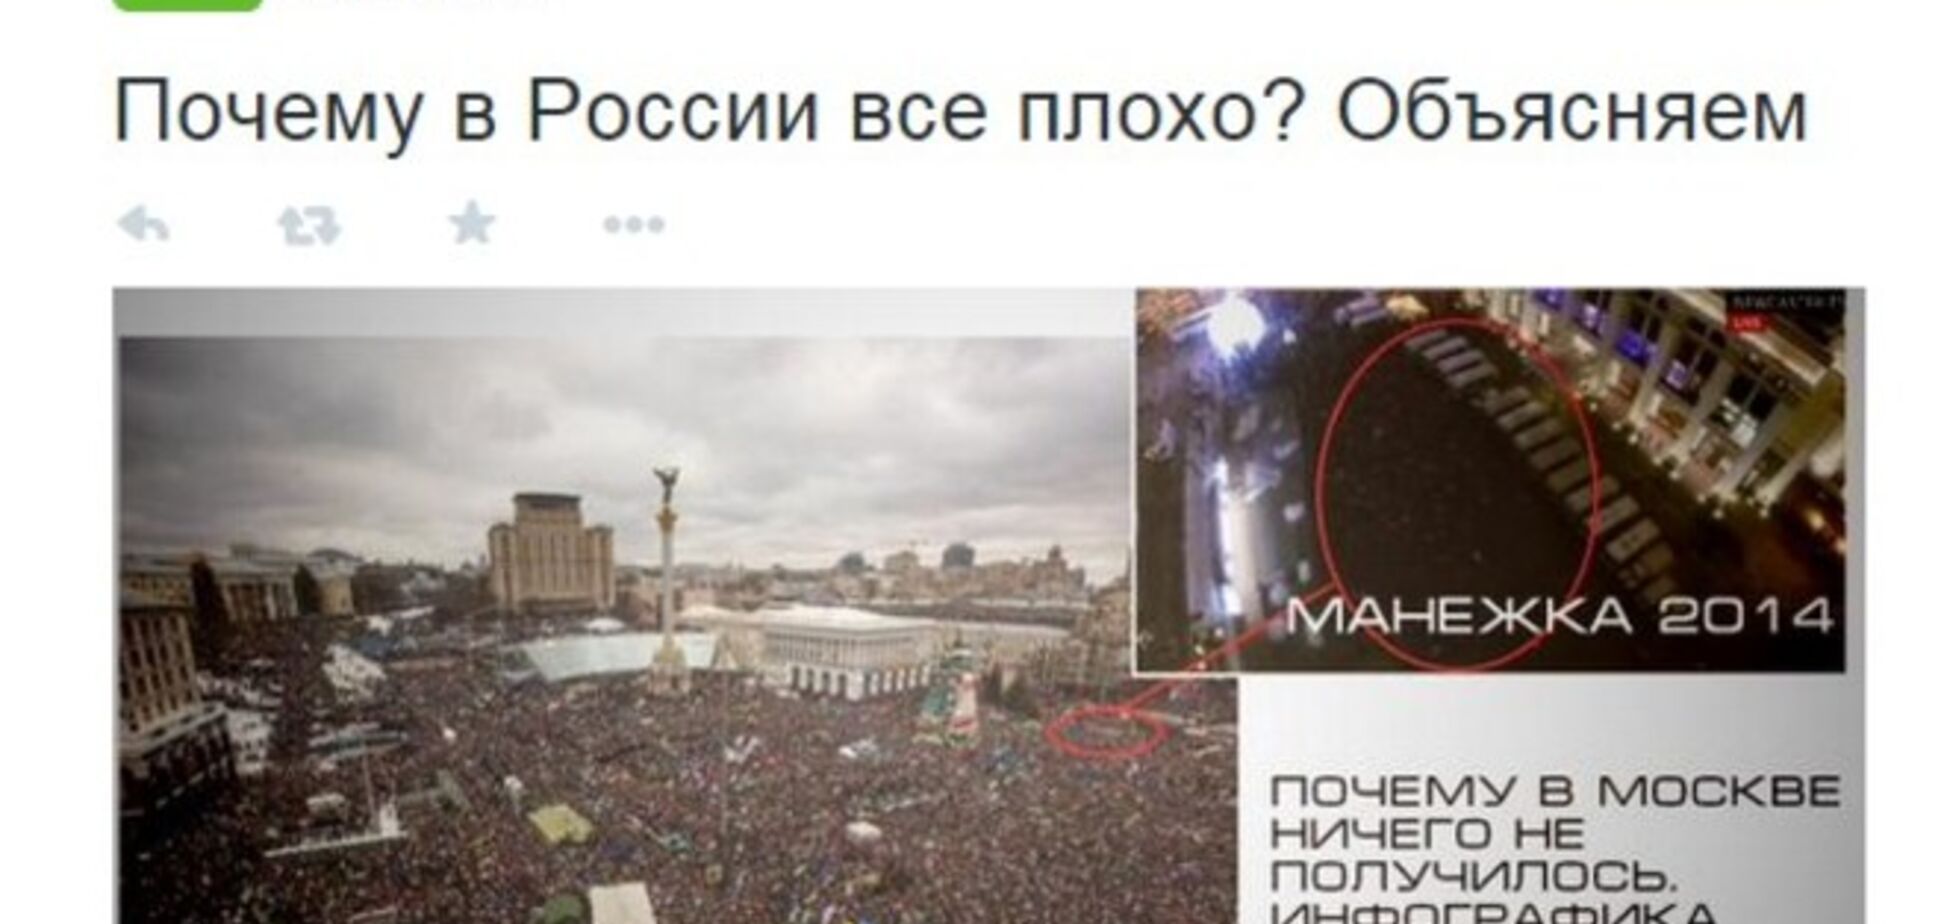 'В Харькове больше людей вышло тралик толкать', или Почему Манежка не Майдан: реакция соцсетей